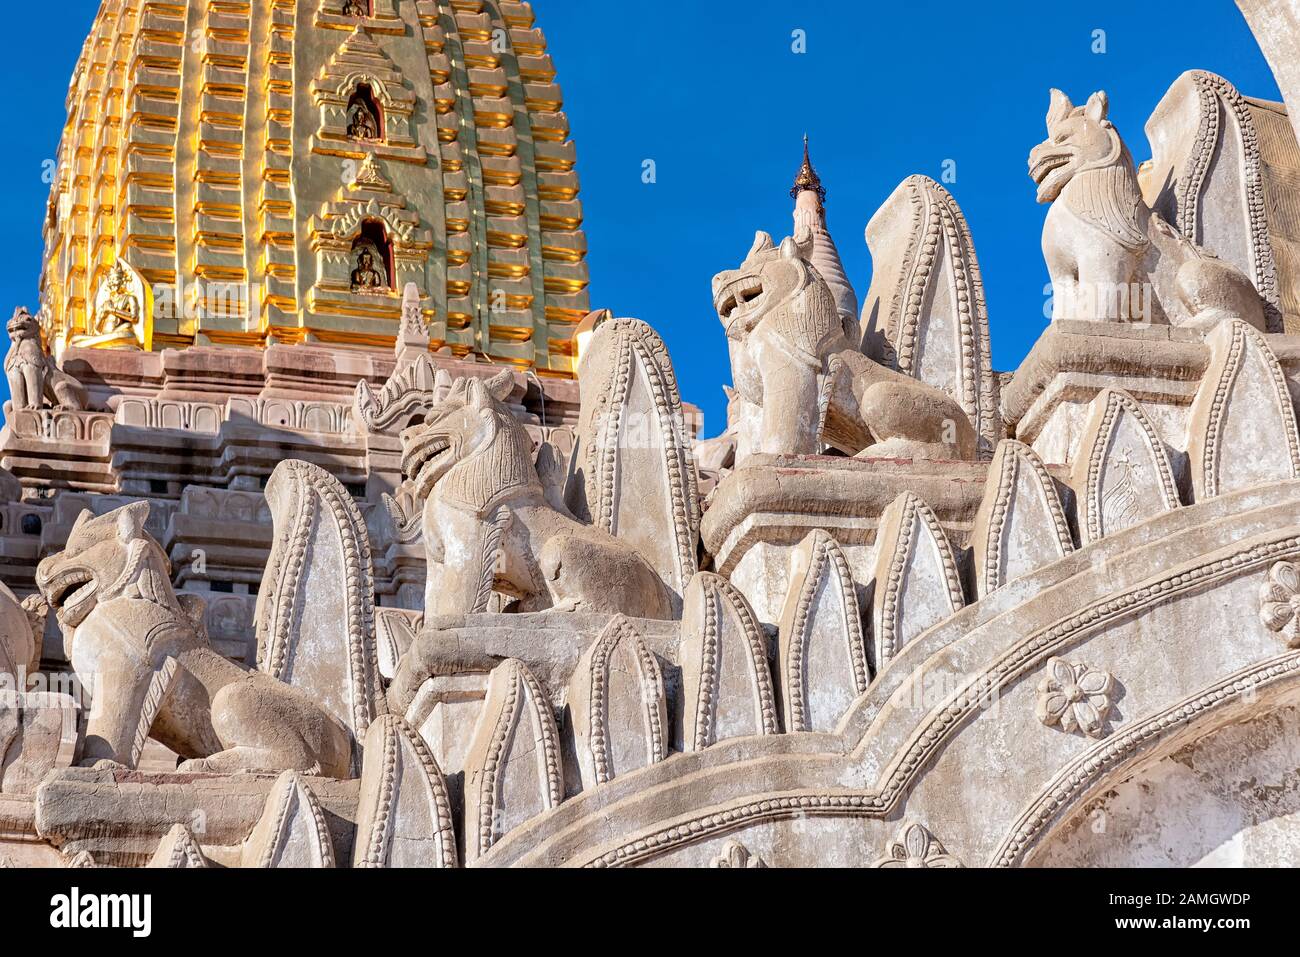 Détails de Ananda Temple de Bagan, Myanmar. Ce temple bouddhiste a été construit en 1105 AD, et il est dit d'être une merveille architecturale Banque D'Images